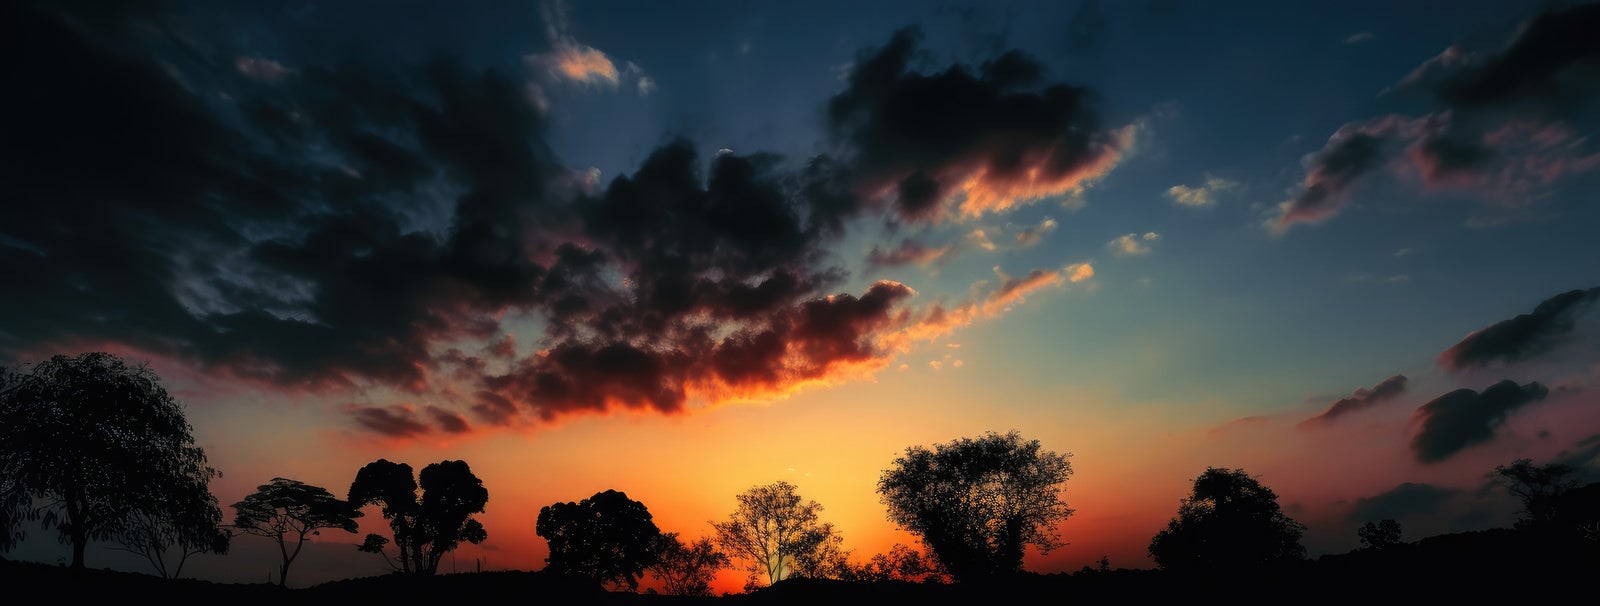 「夕焼け空と木々のシルエット」の写真